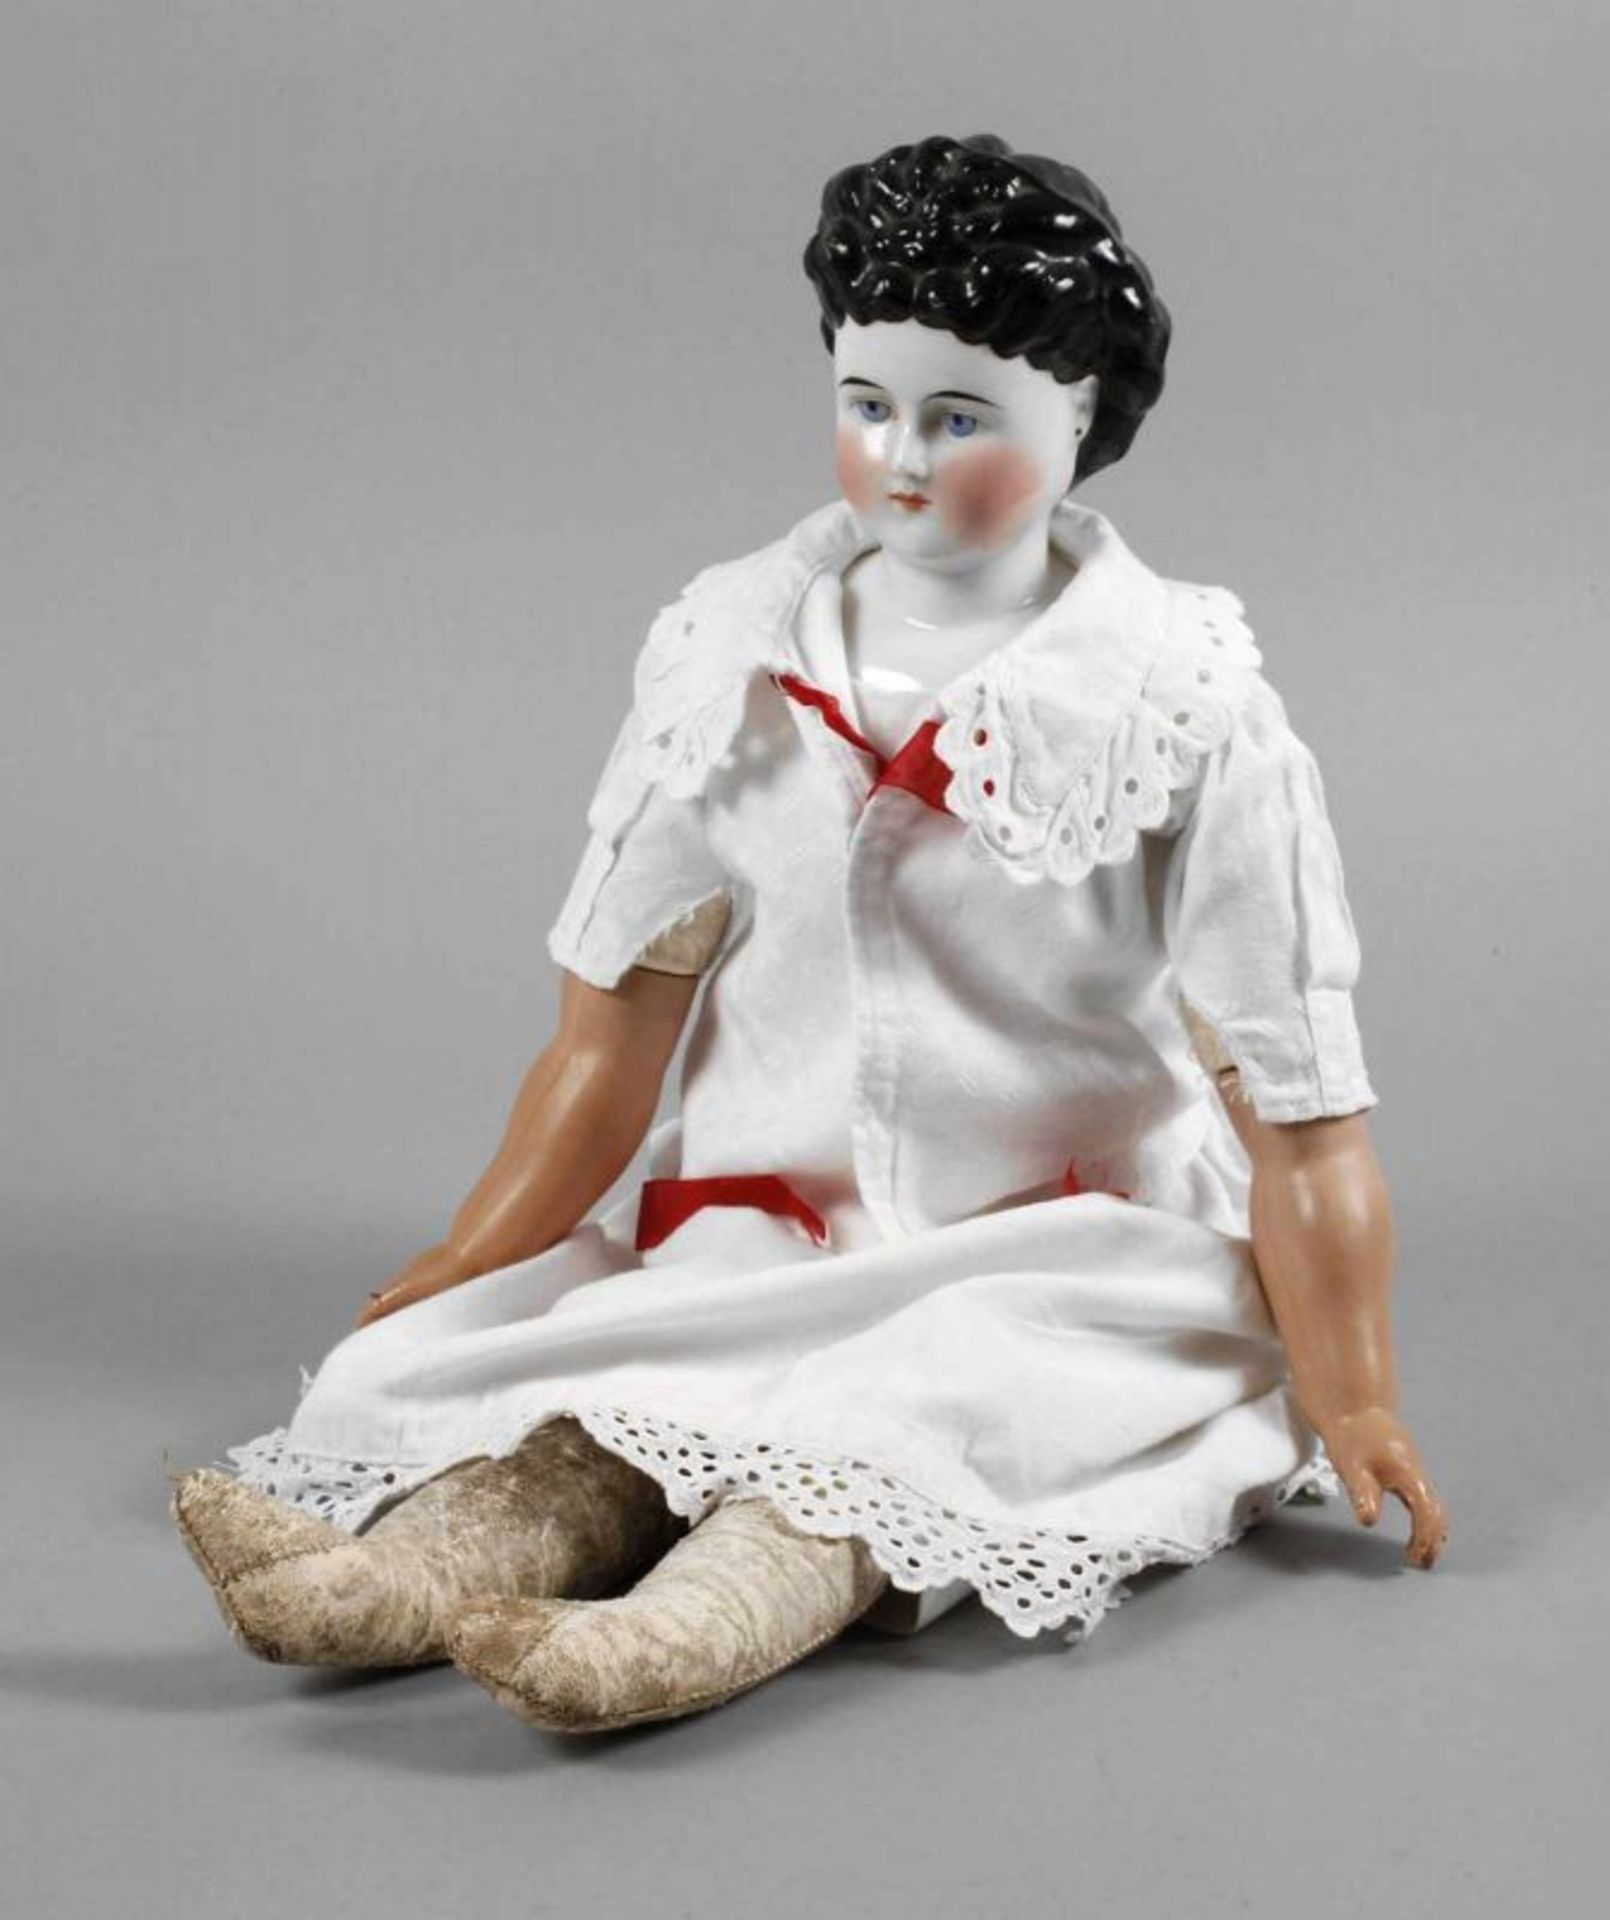 Große glasierte Porzellankopfpuppe sog. Biedermeier-Puppe, Dame, um 1880, ungemarkt, weiß glasierter